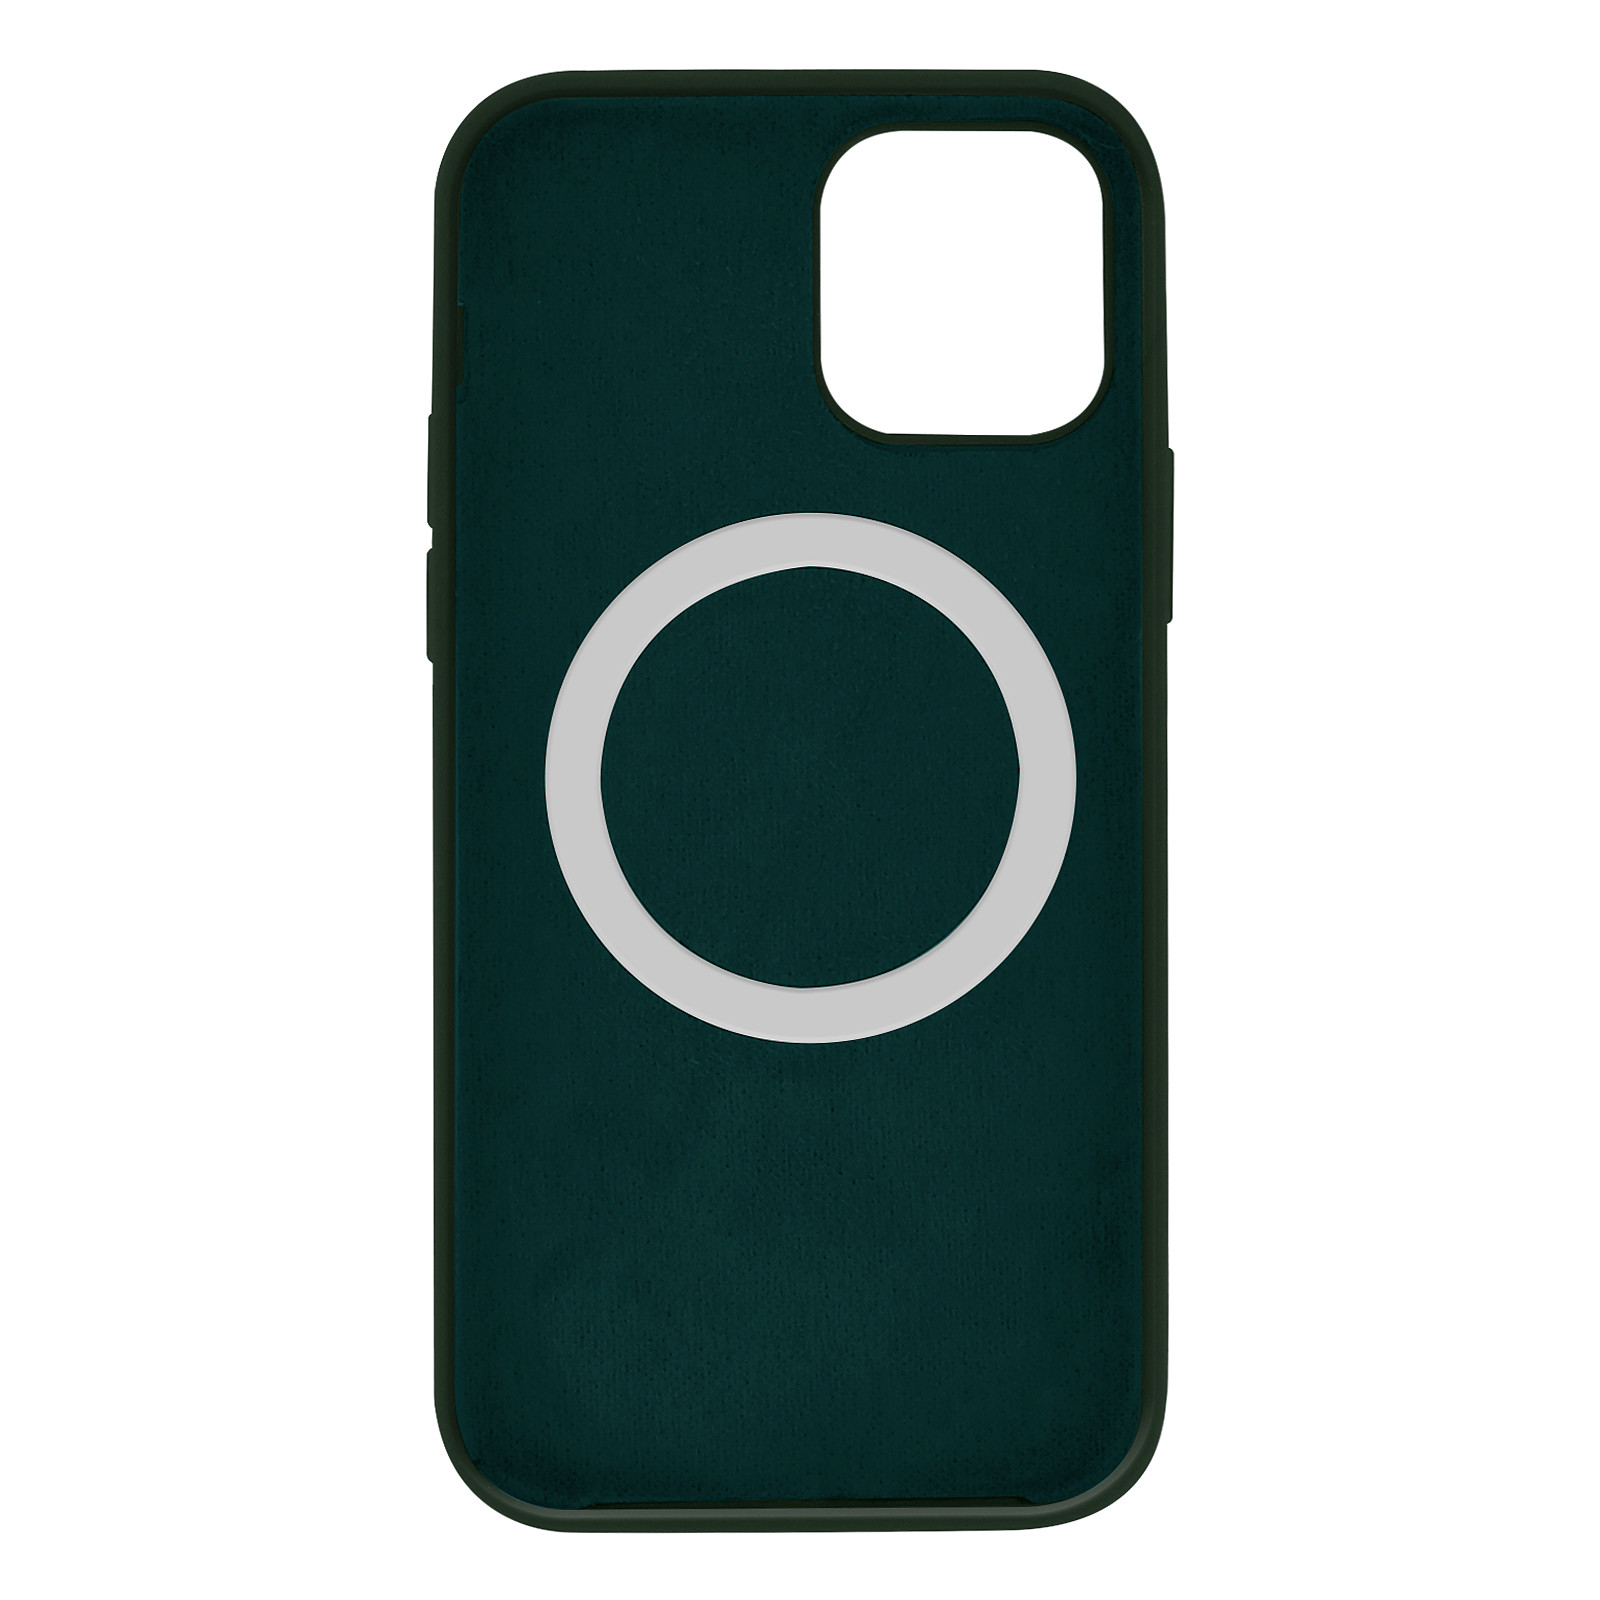 Avizar Coque pour iPhone 12 Mini Magsafe Silicone semi-rigide Anti-traces Vert - Coque telephone Avizar